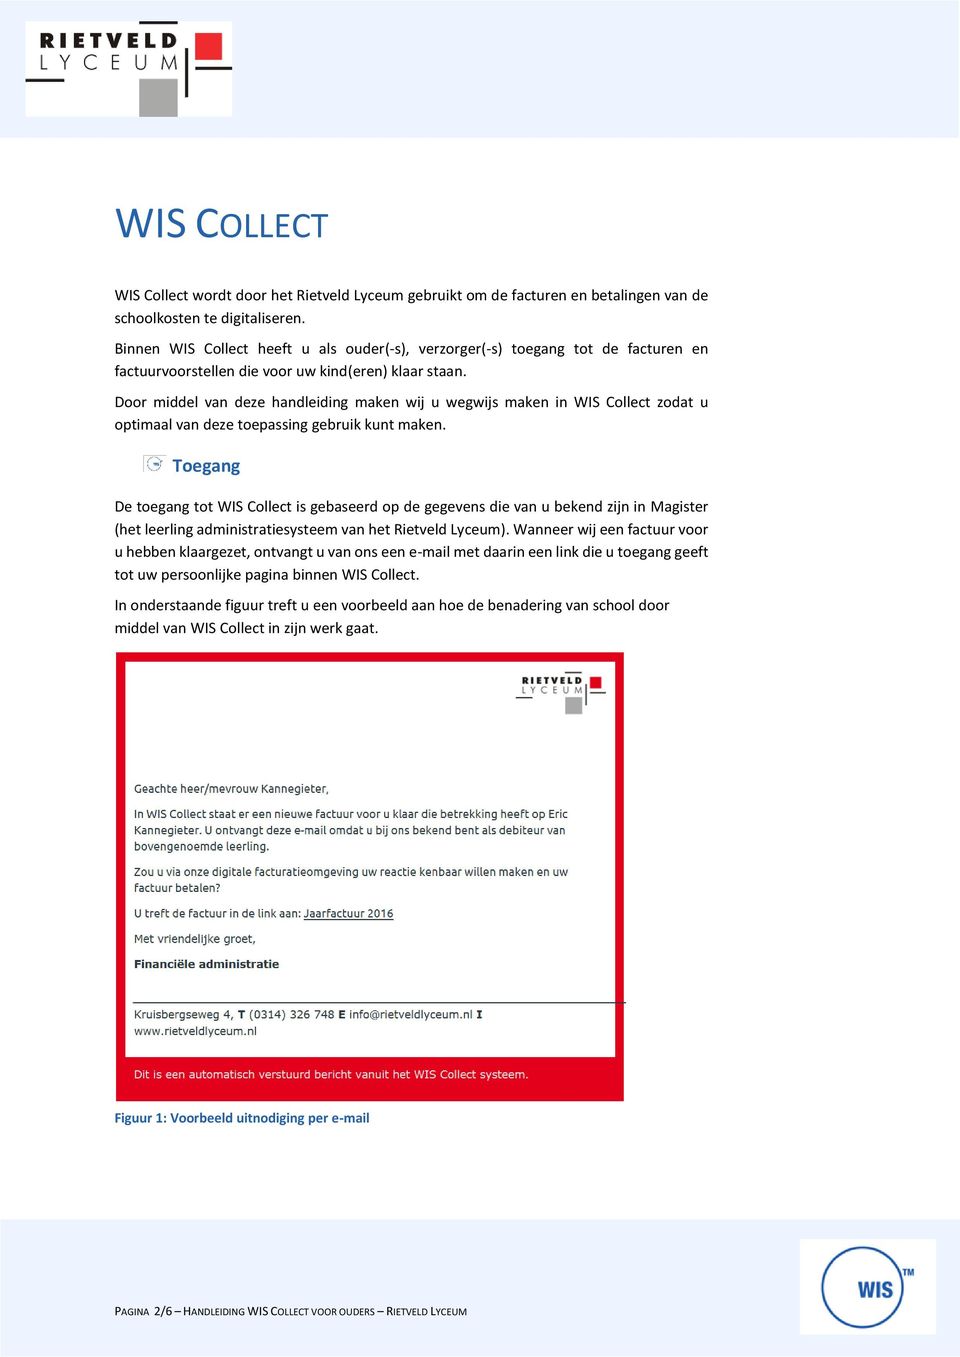 Door middel van deze handleiding maken wij u wegwijs maken in WIS Collect zodat u optimaal van deze toepassing gebruik kunt maken.